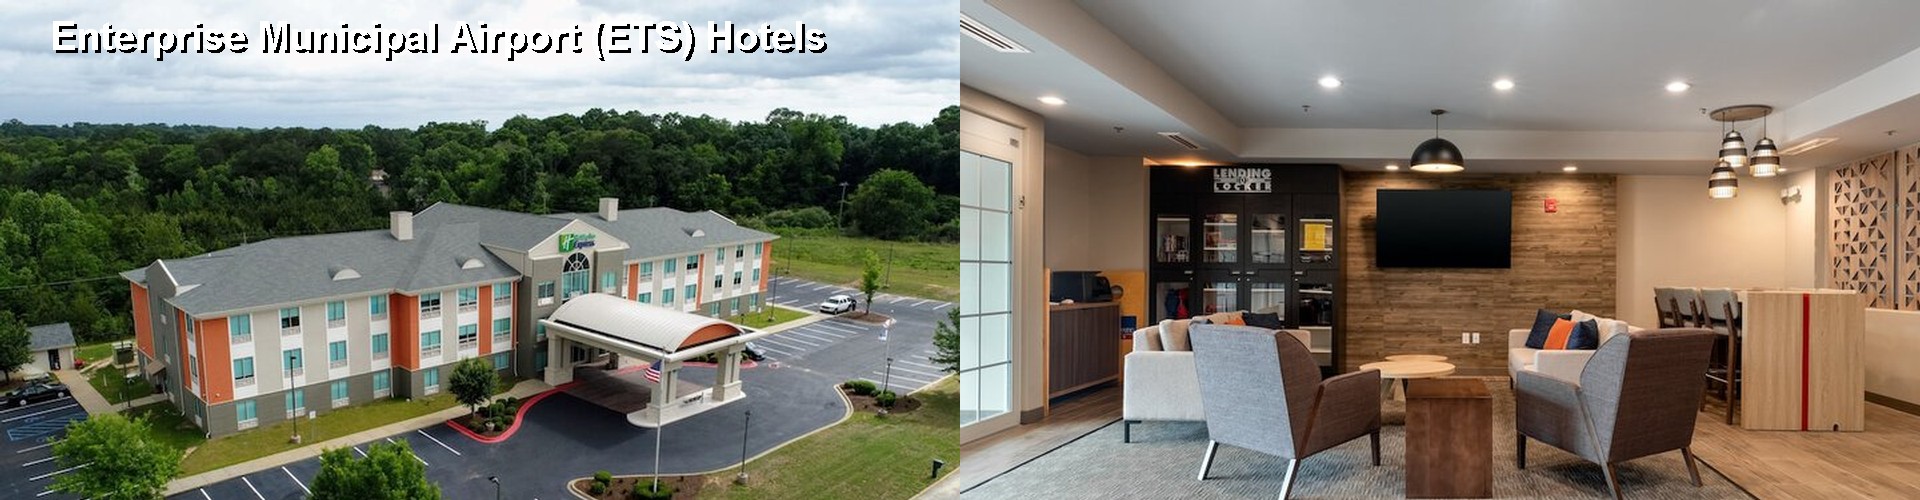 4 Best Hotels near Enterprise Municipal Airport (ETS)